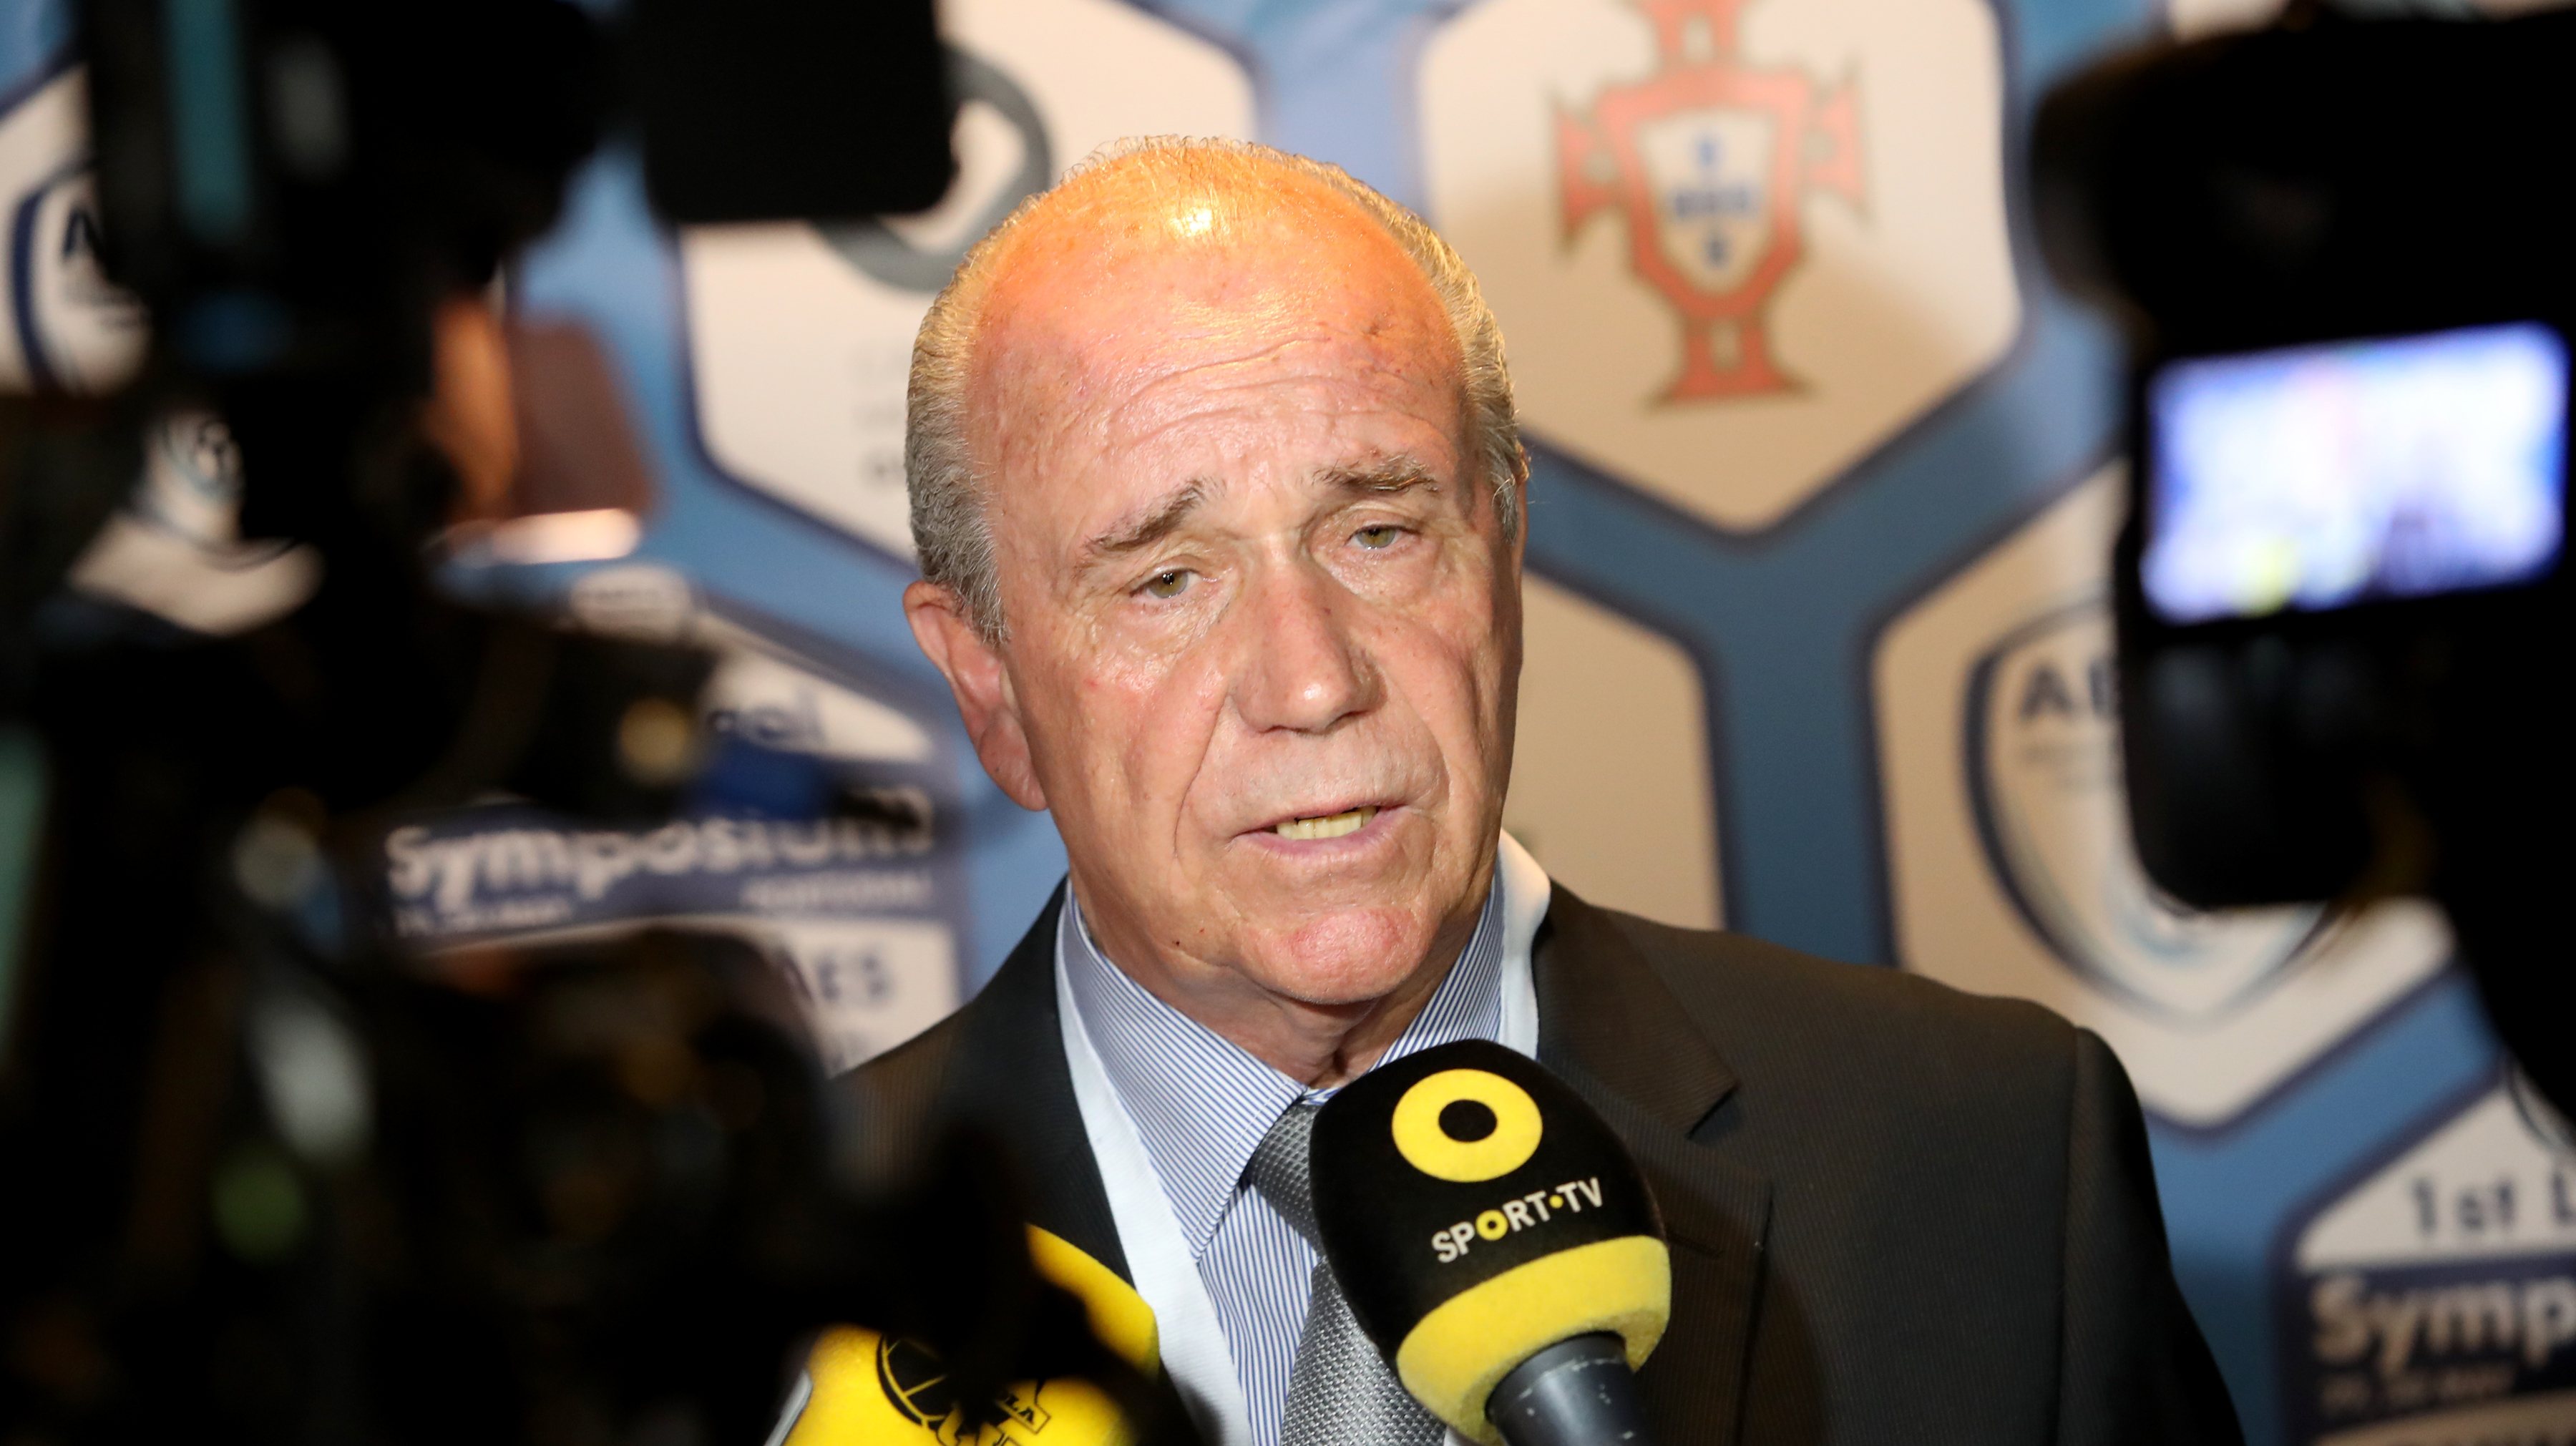 José Pereira, presidente da Associação Nacional de Treinadores de Futebol, afirmou no dia em que o caso de Amorim que só fará comentários após uma decisão